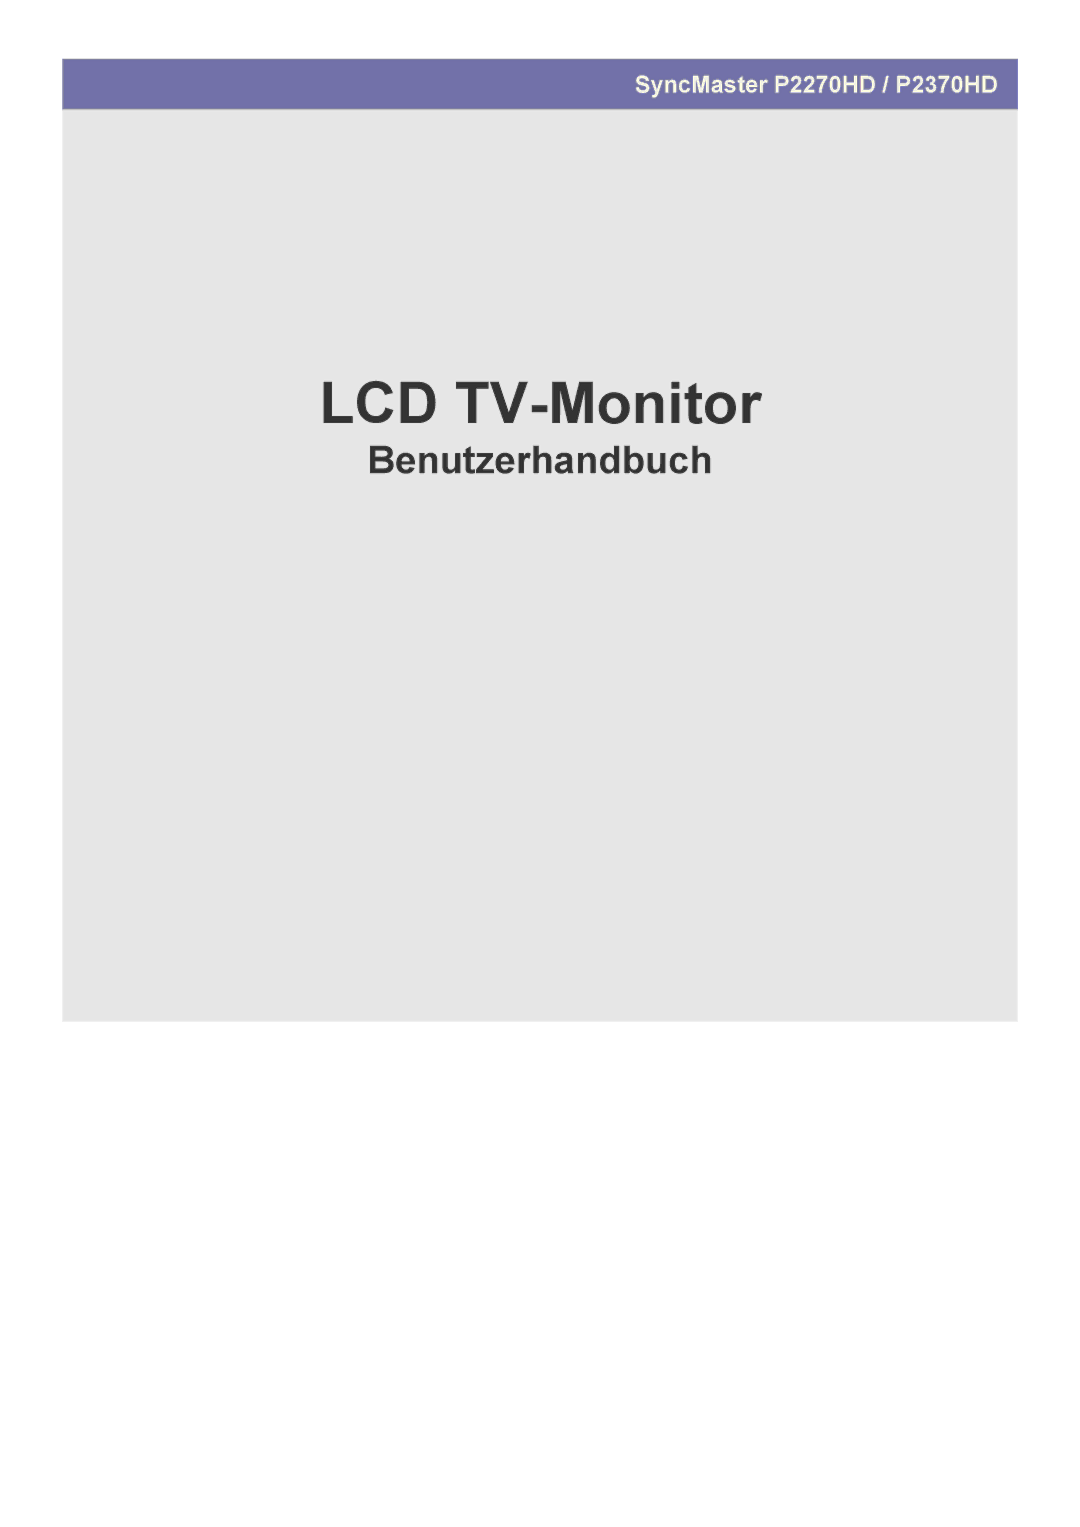 Samsung LS22EFHKFU/EN, LS22EFHKFV/EN, LS23EMDKU/EN, LS23EFHKFV/EN, LS23EMDKF/EN manual LCD TV Monitor 